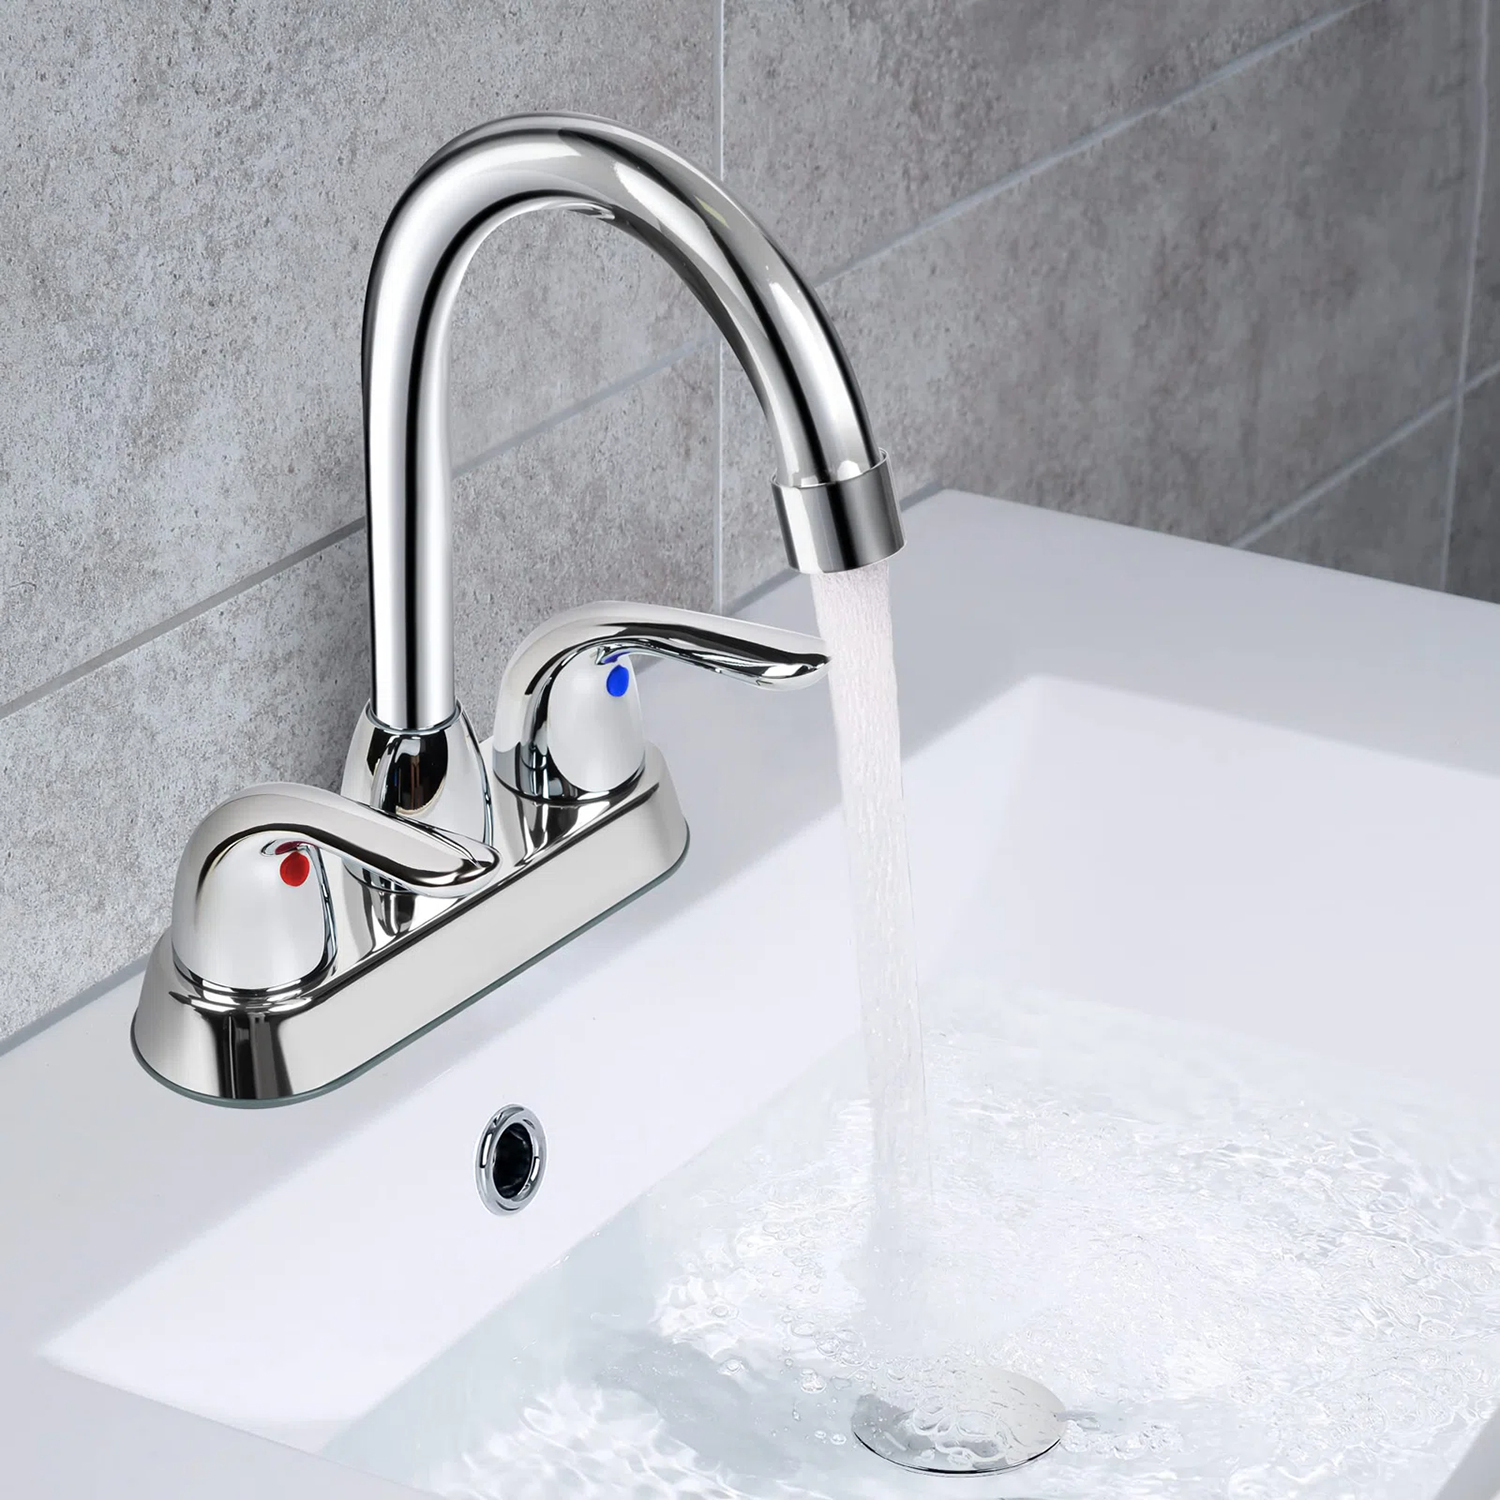 CUPC Widespread 4 Inch Centerset 2 Handles Bathroom Basin Faucet bathroom water mixer taps